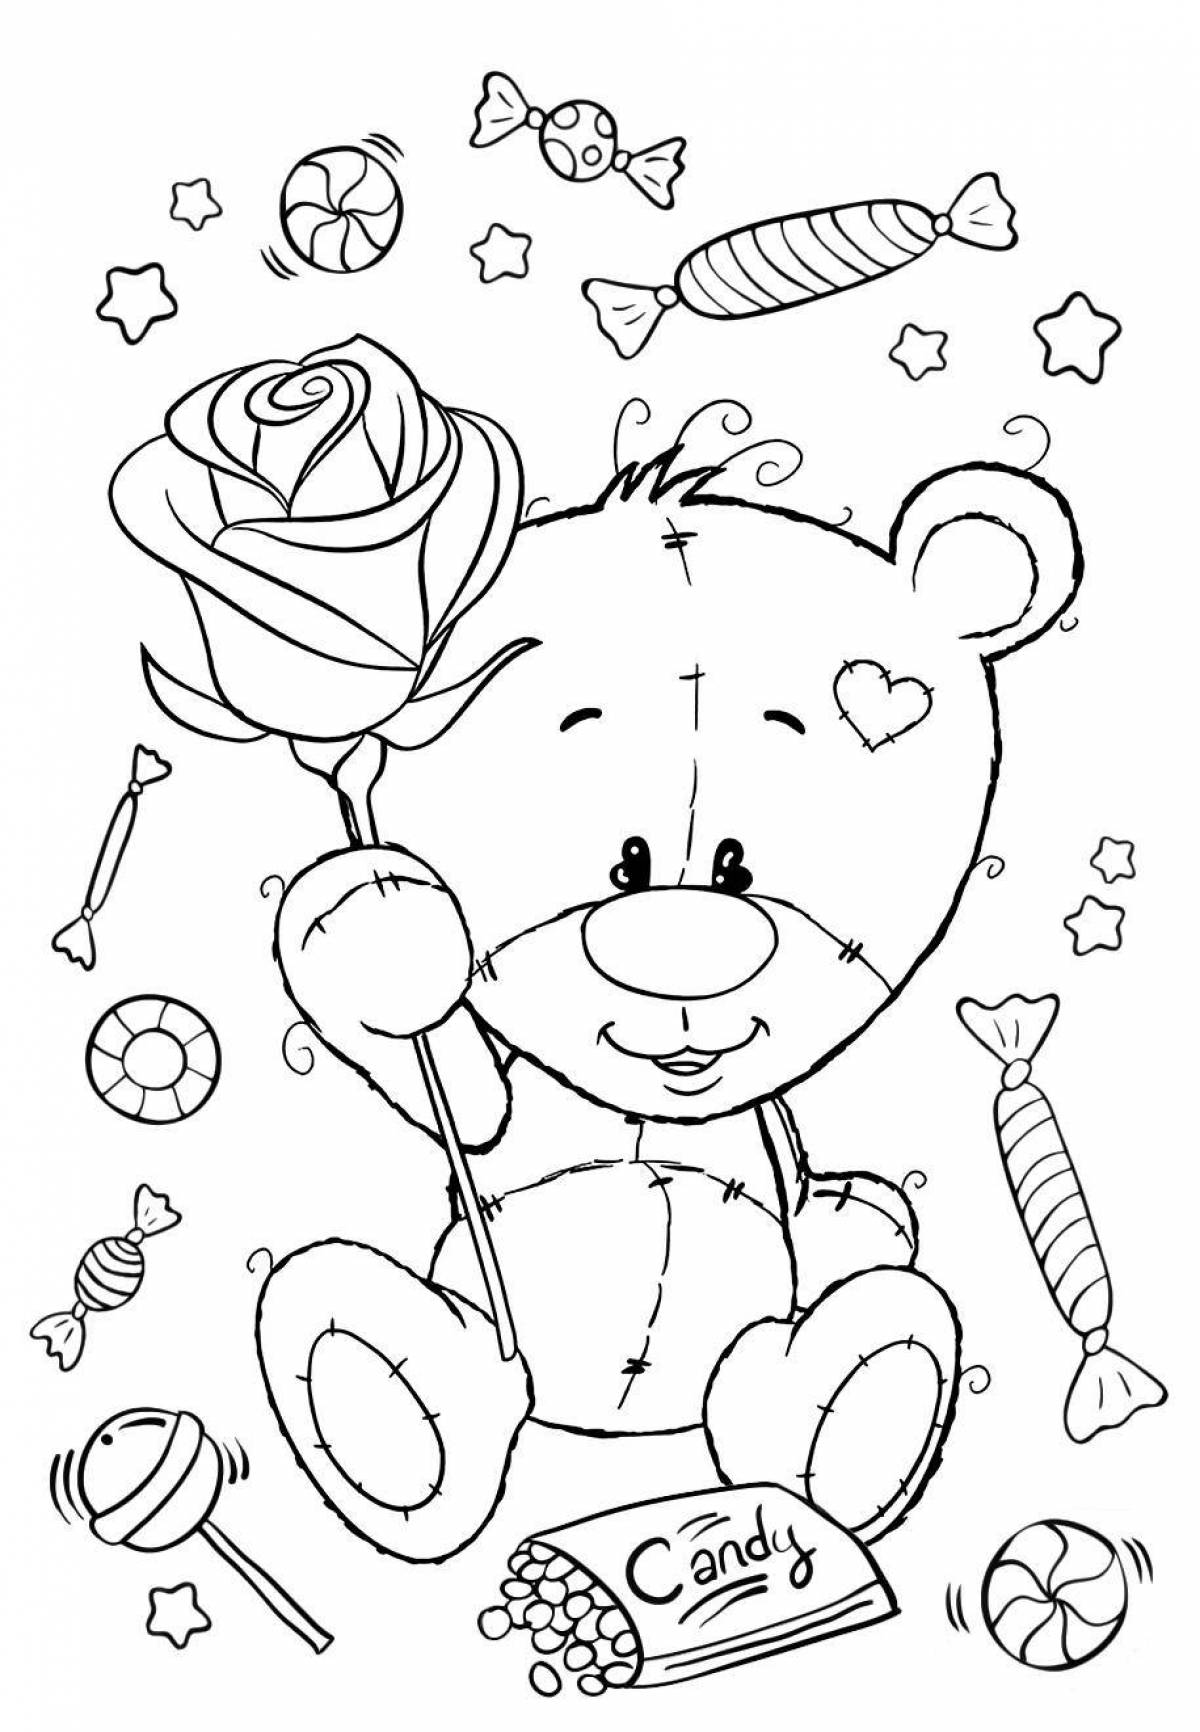 Cute and cute bear coloring book